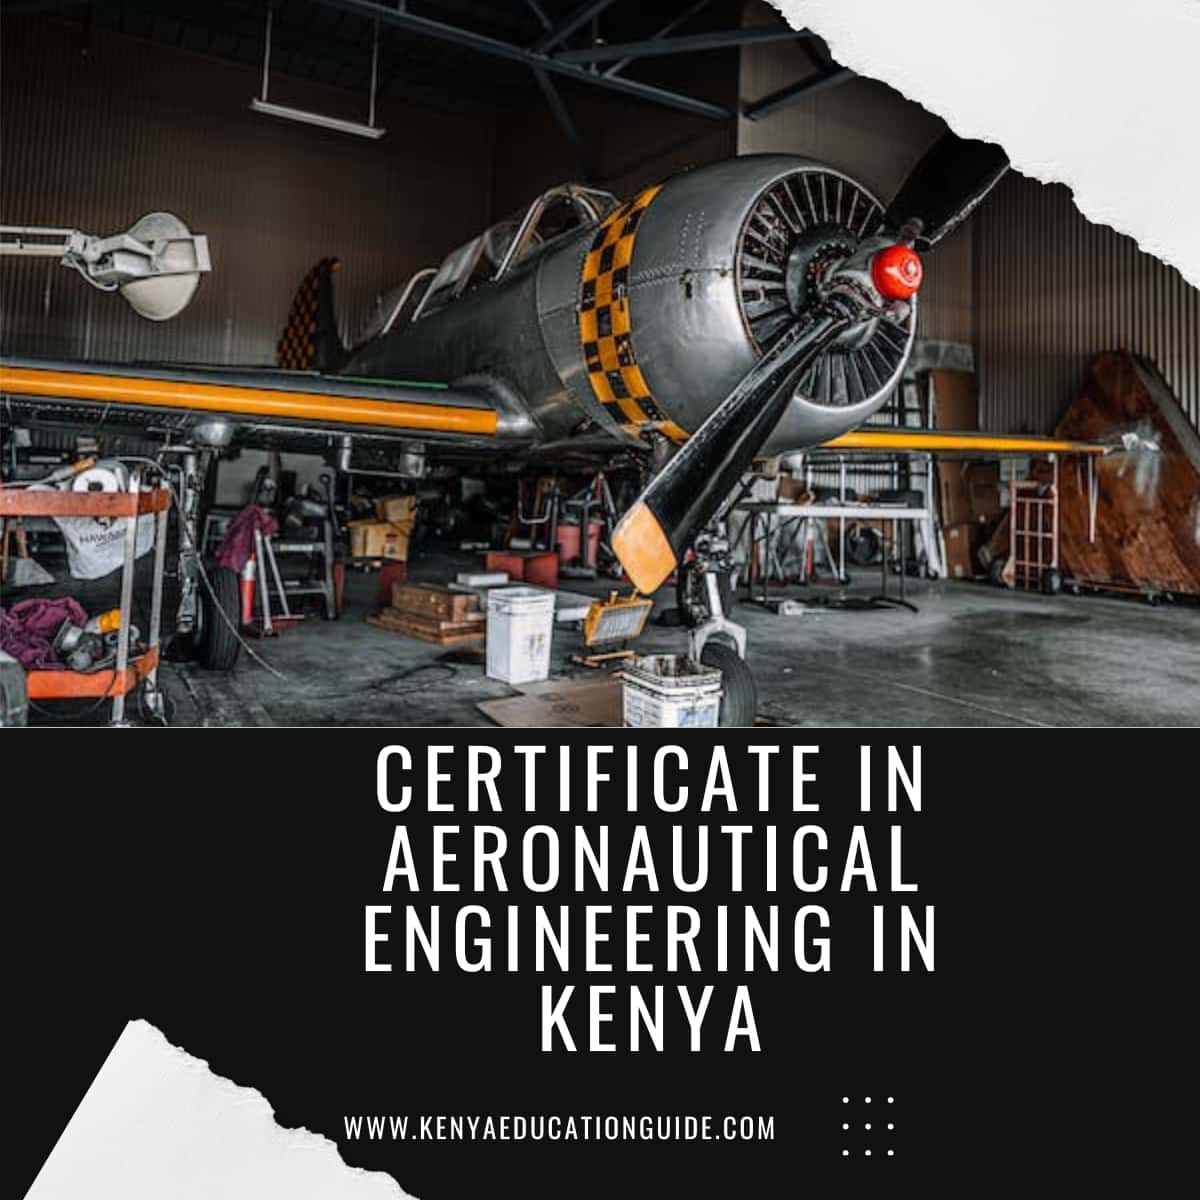 Certificate in Aeronautical Engineering in Kenya